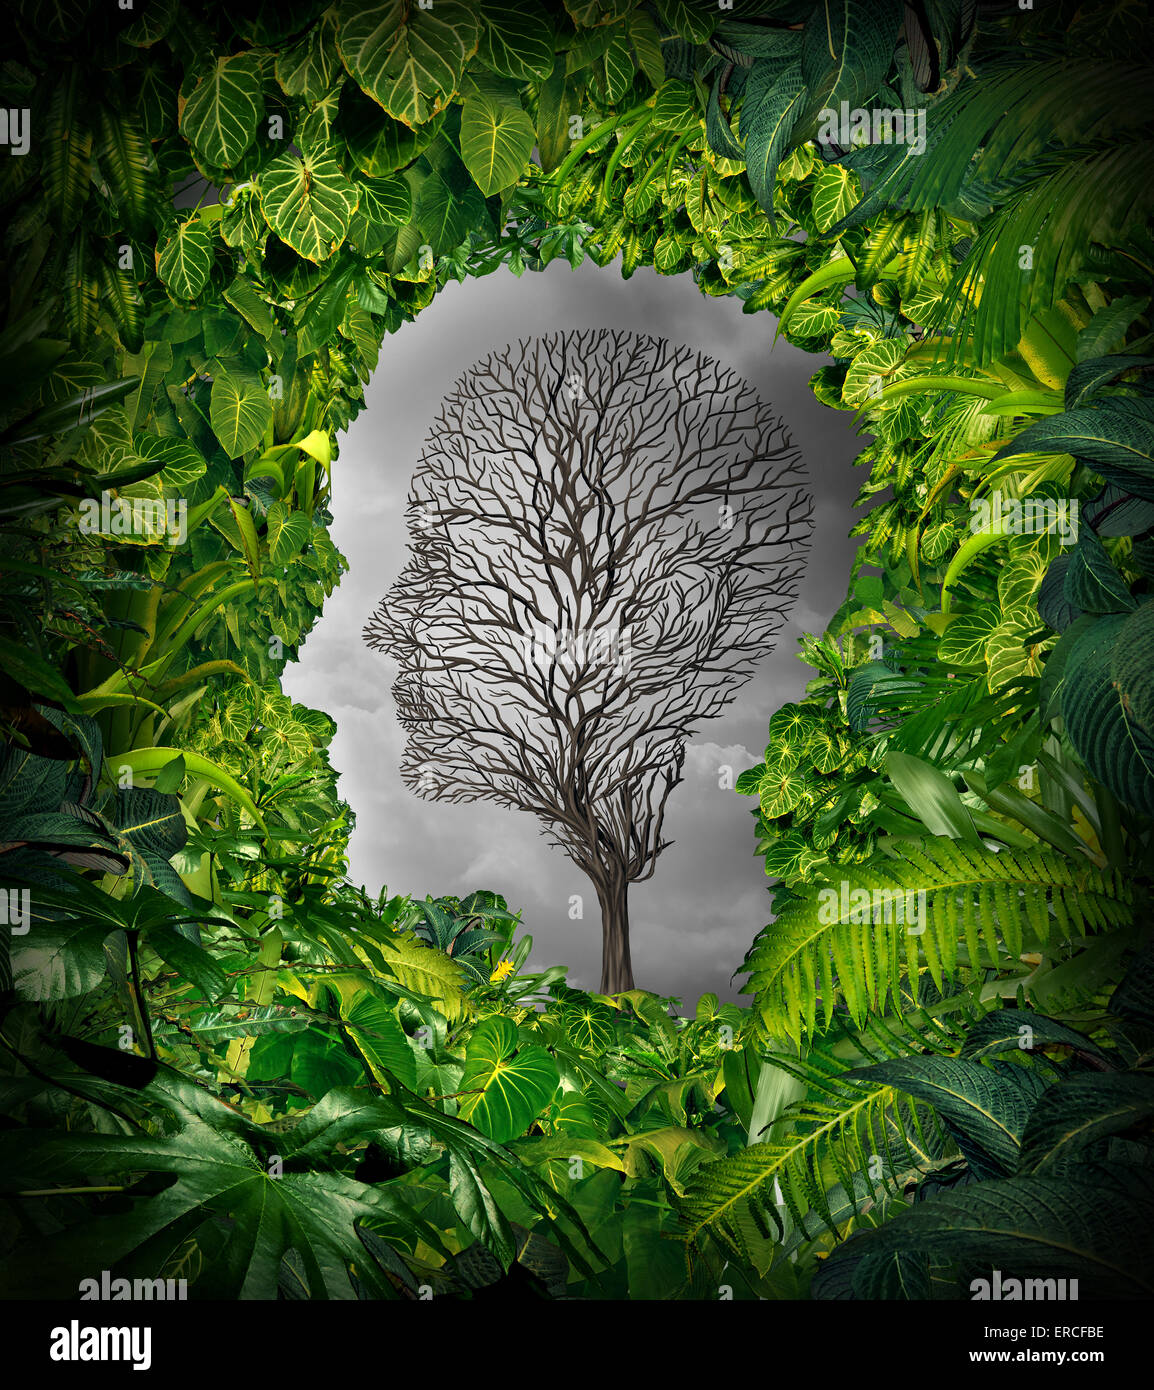 La dépression à l'intérieur concept et sentiments de détresse intérieure comme un symbole de la santé mentale avec une plante verte en forme de fenêtre de la jungle comme une tête humaine et un arbre mort comme un visage souffrant pour la psychologie de l'examen. Banque D'Images